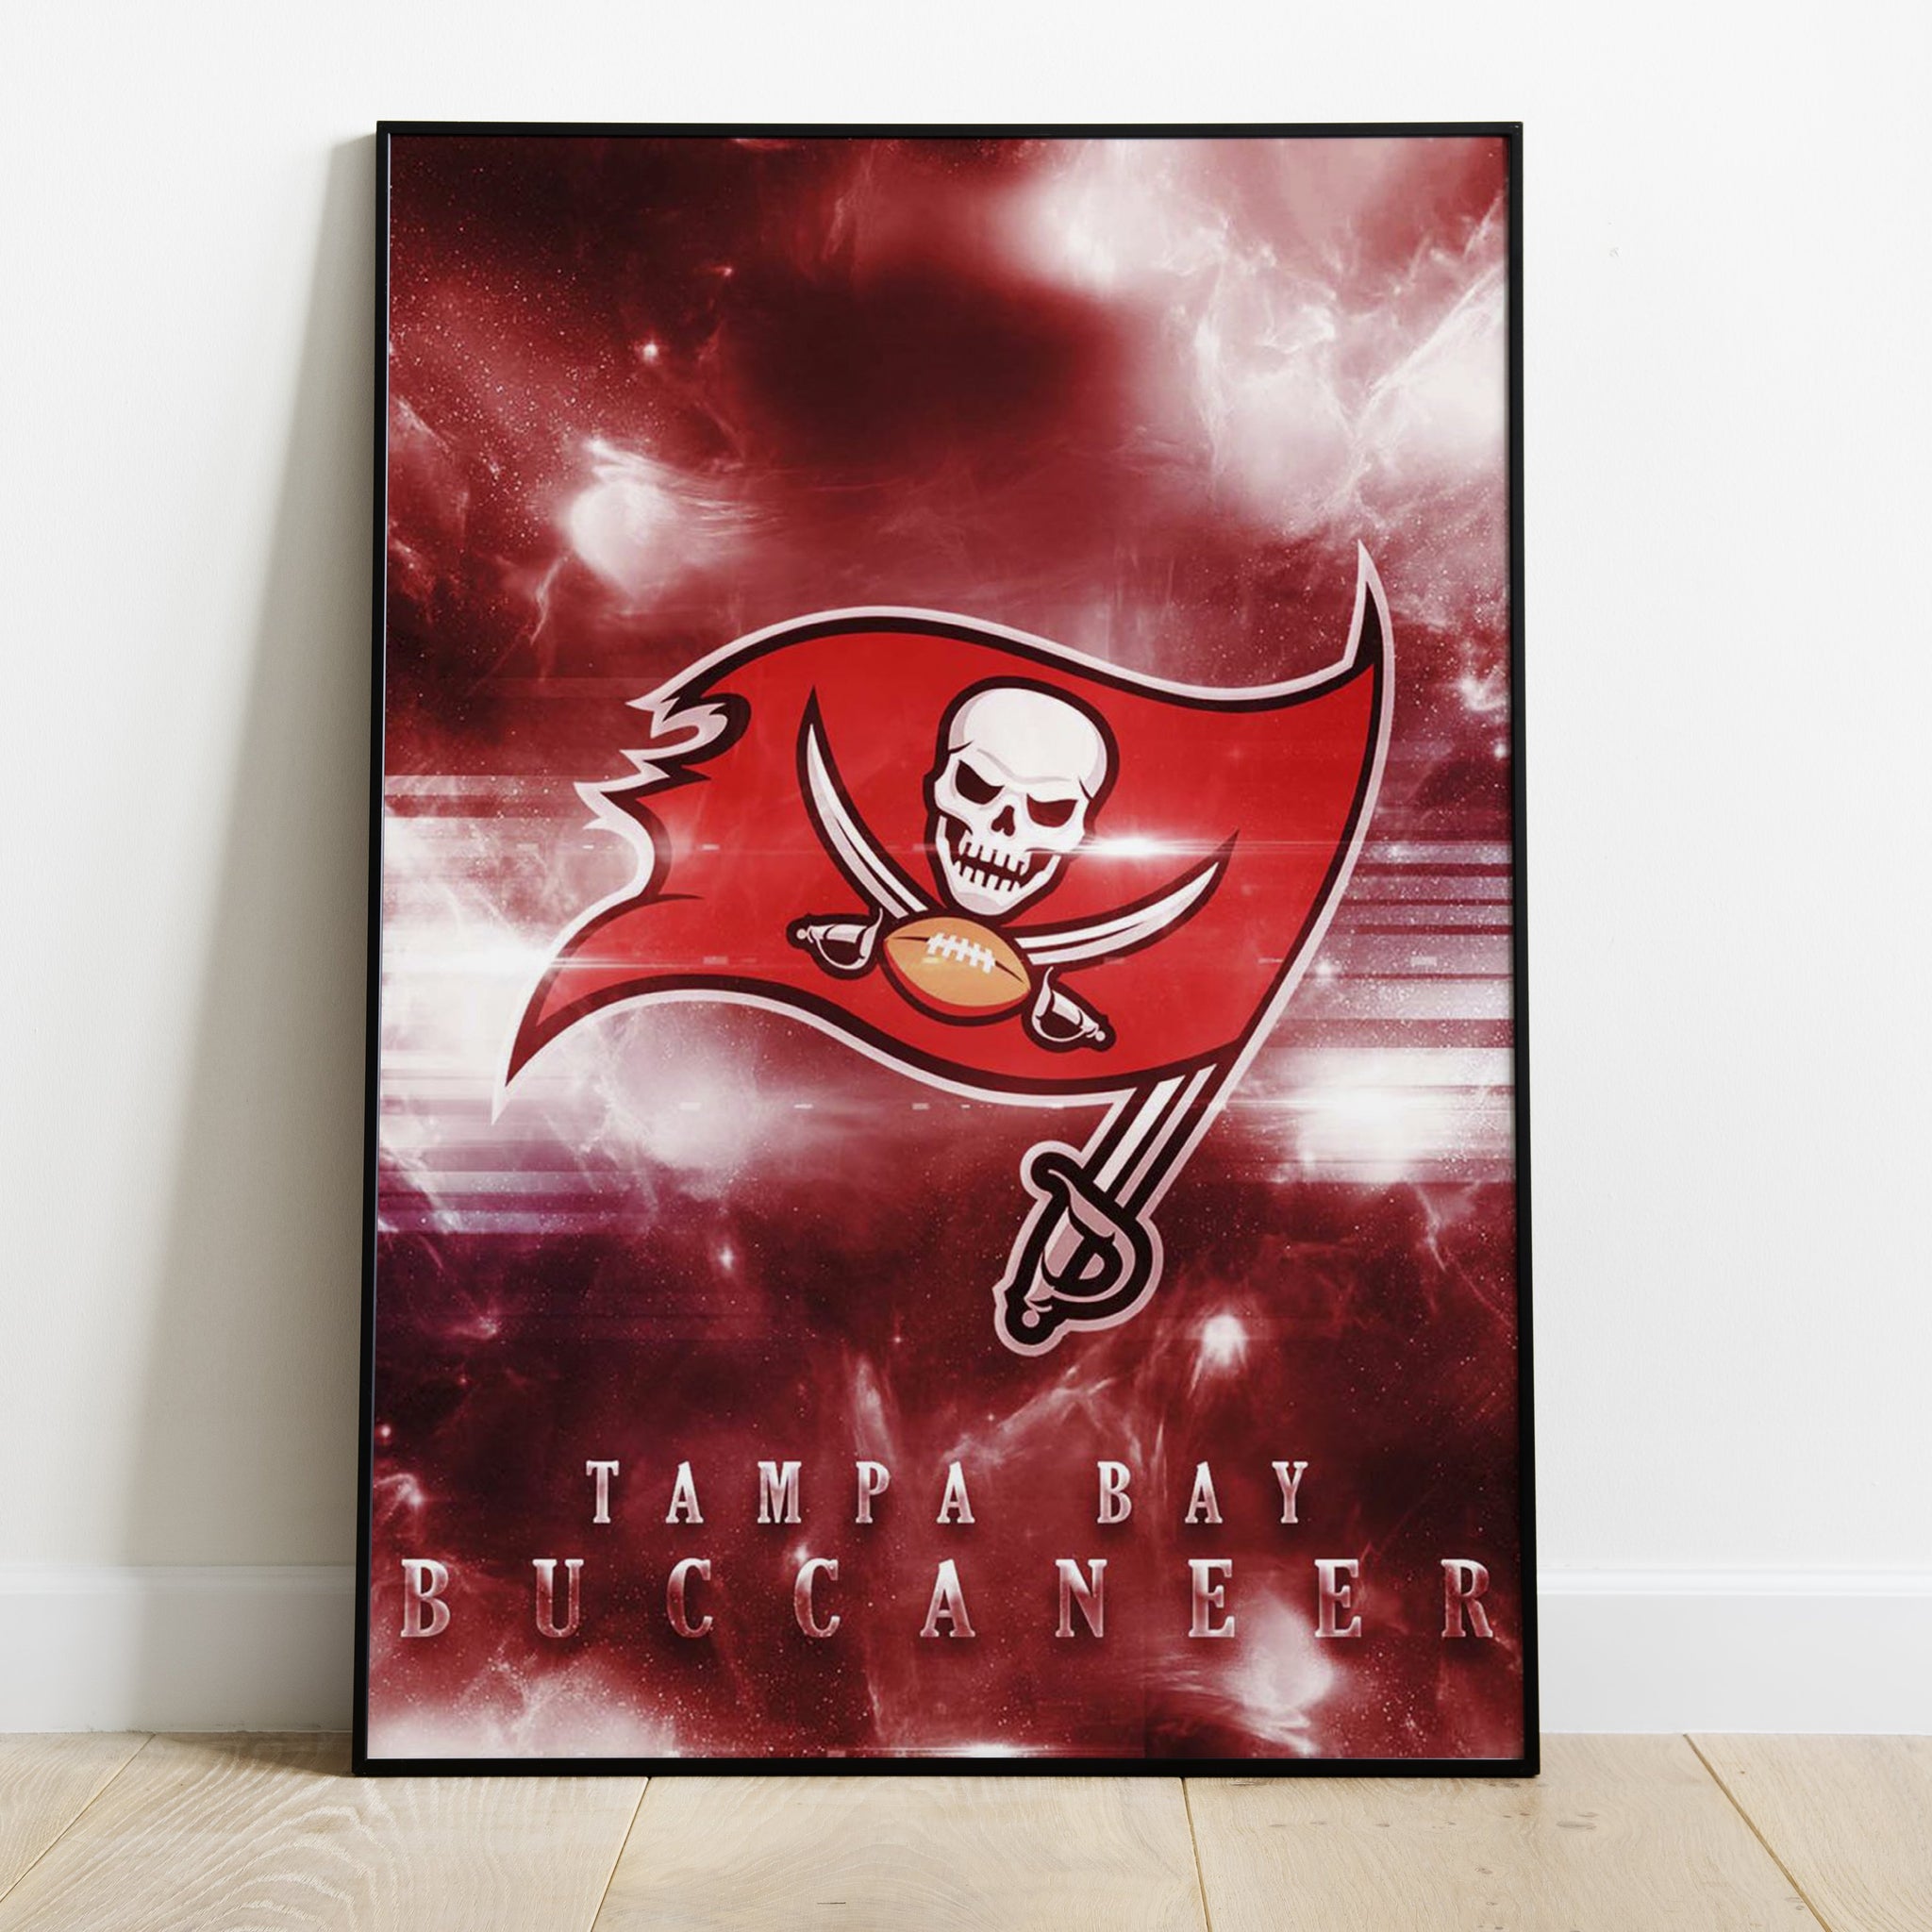 Tampa Bay Buccaneers Logo Art Premium Poster - Team Spirit Store USA 